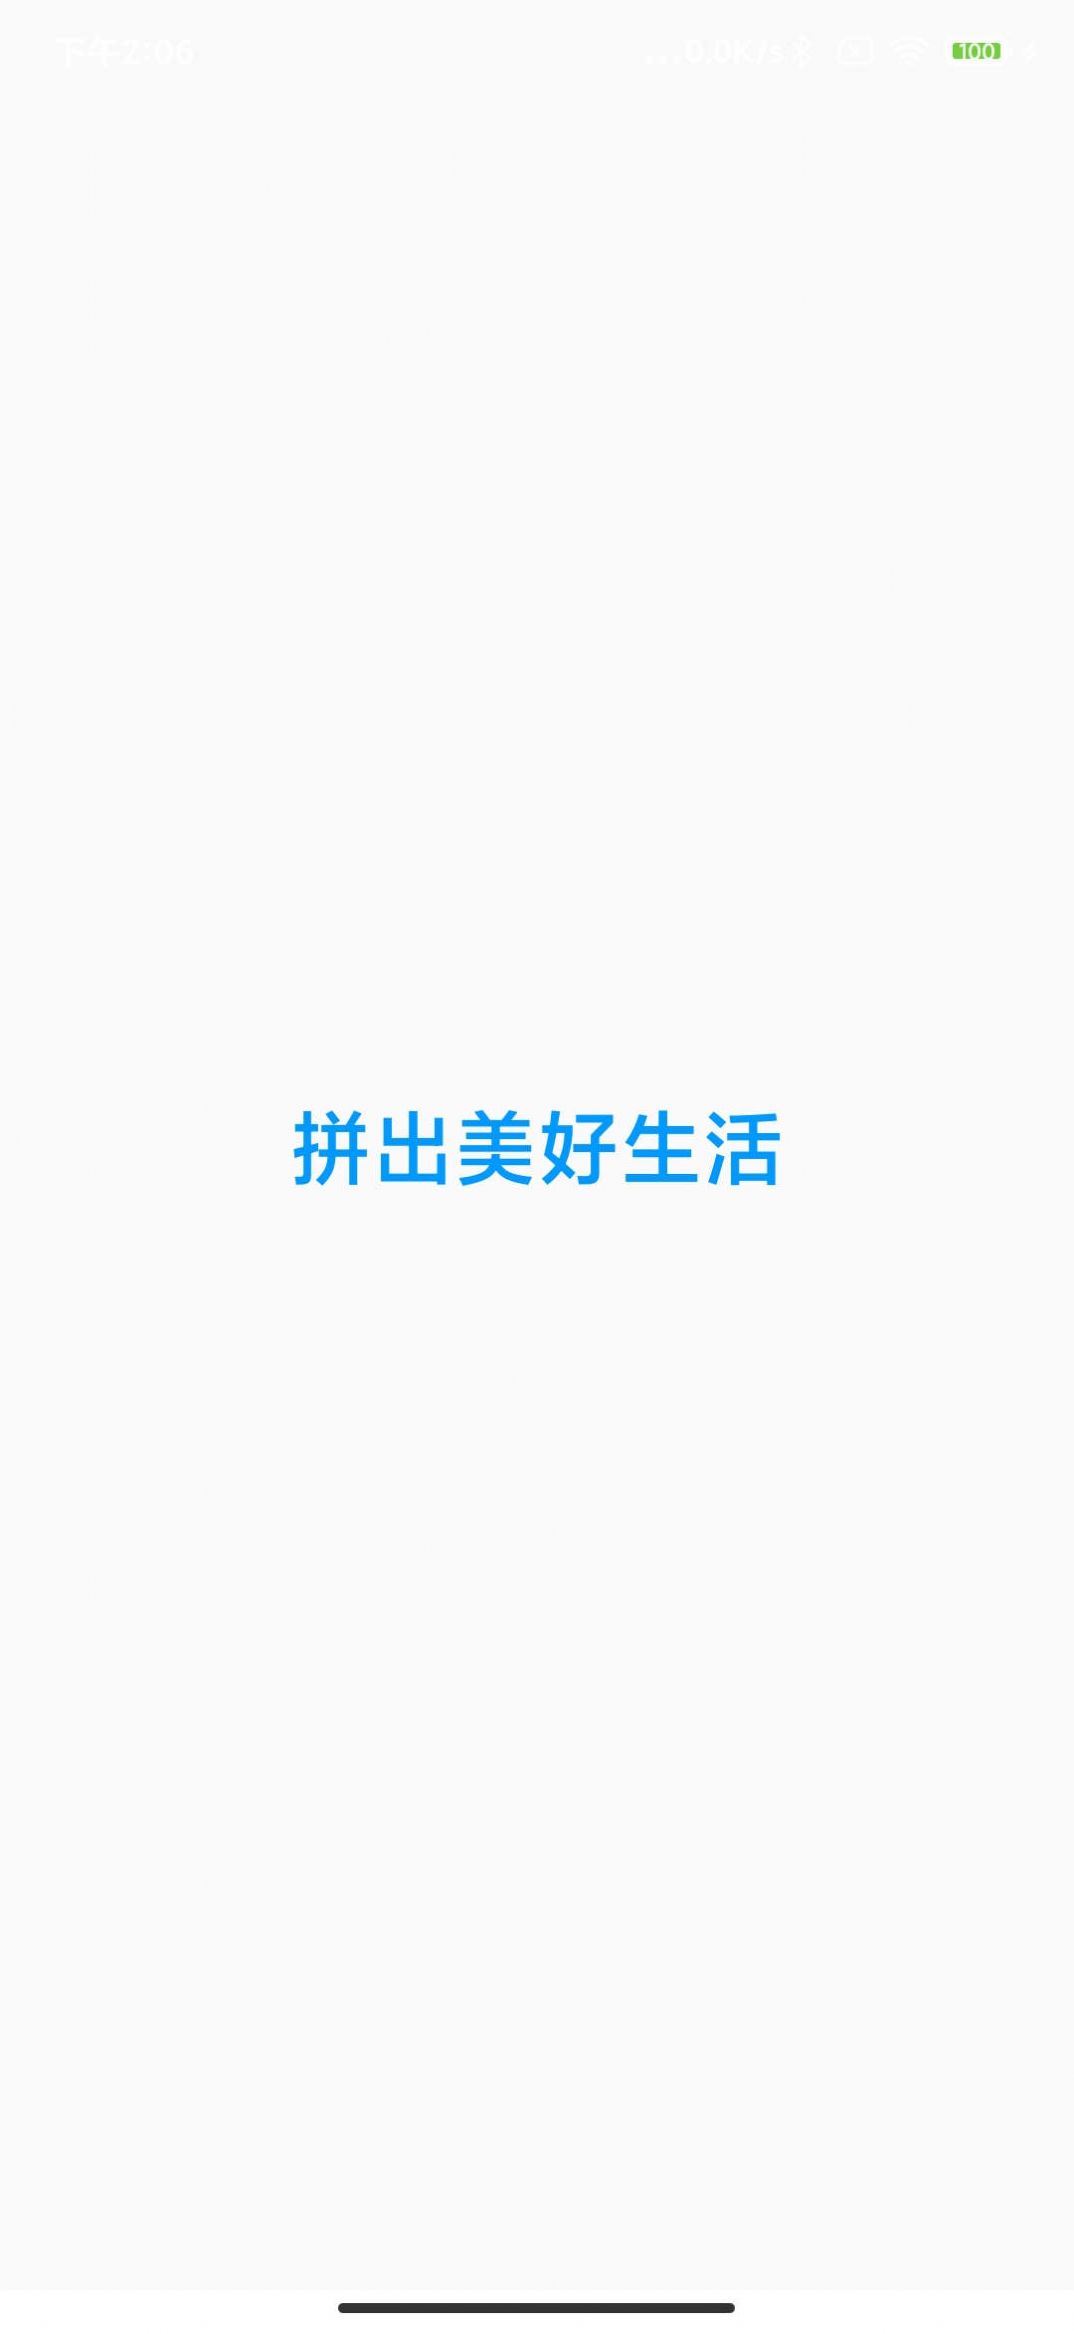 萌萌拼拼乐app图1